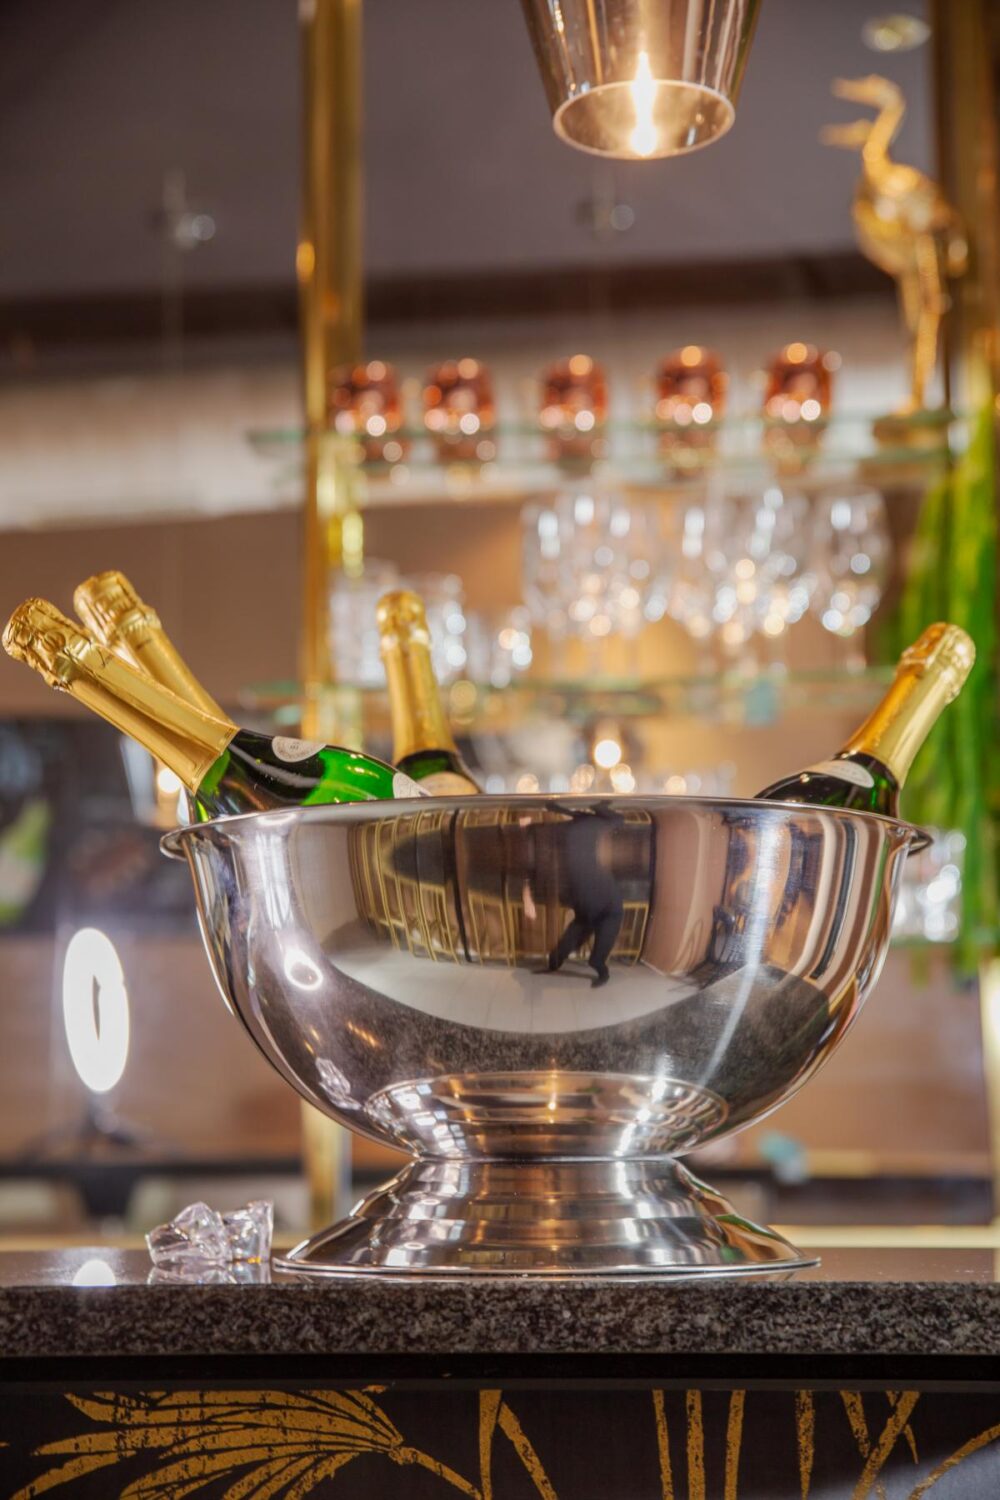 7745 Champagnerkühler Cara, Edelstahl hochglanzpoliert, Durchmesser 40 cm, Höhe 21 cm